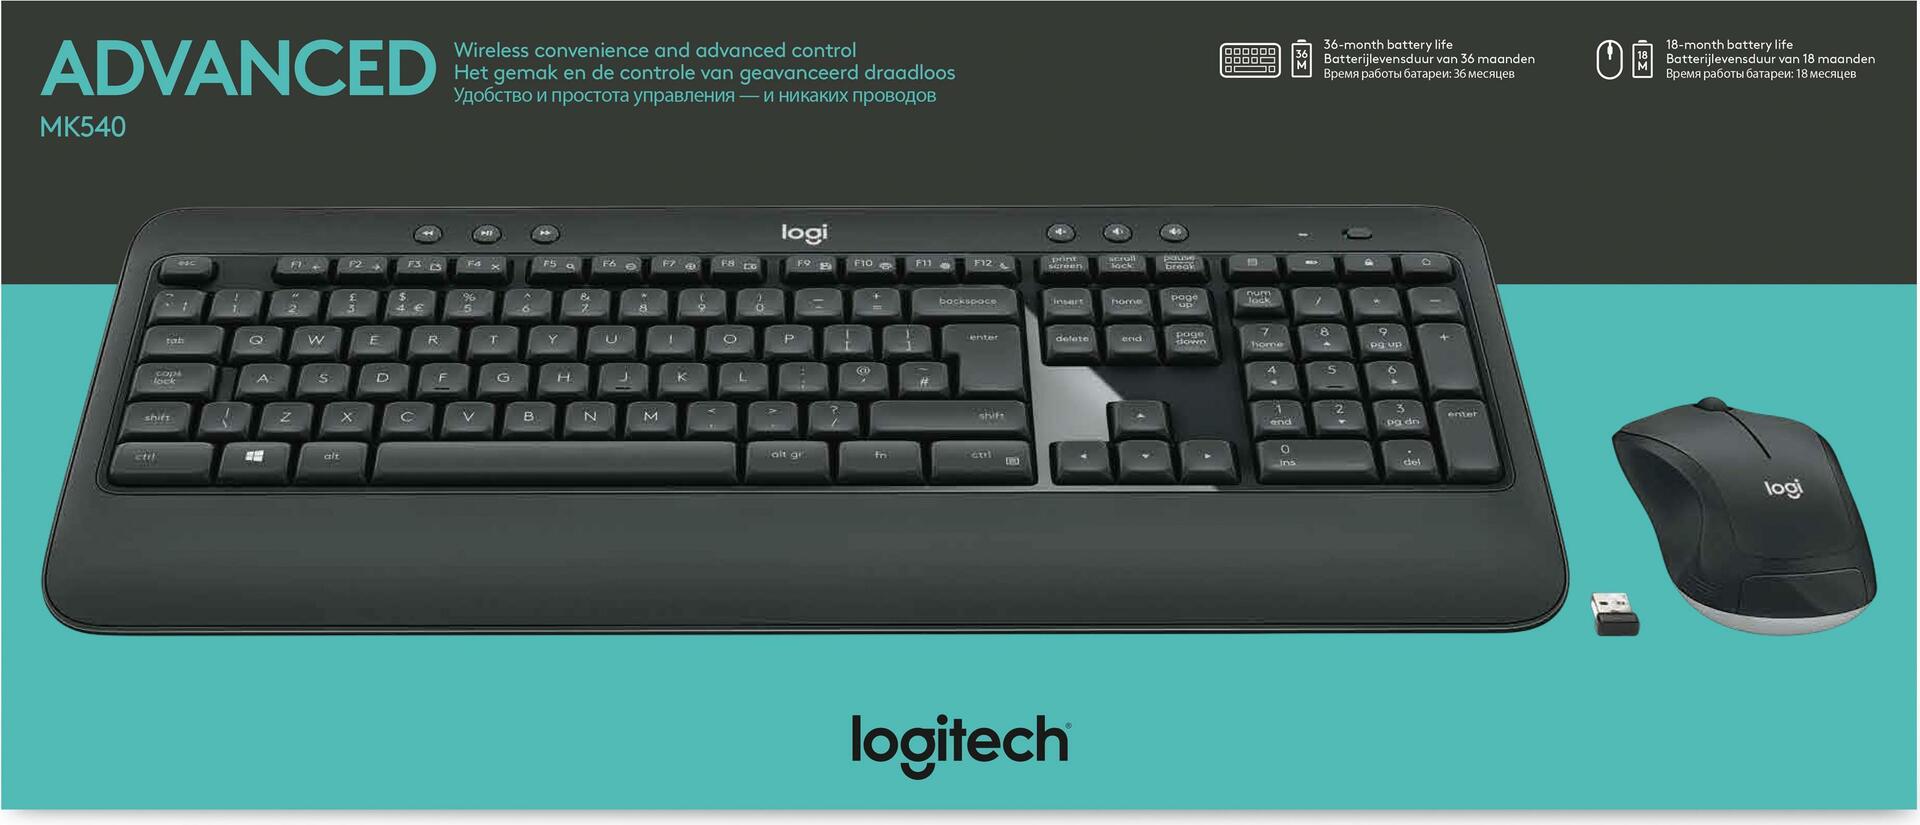 Logitech MK540 Advanced (920-008678)